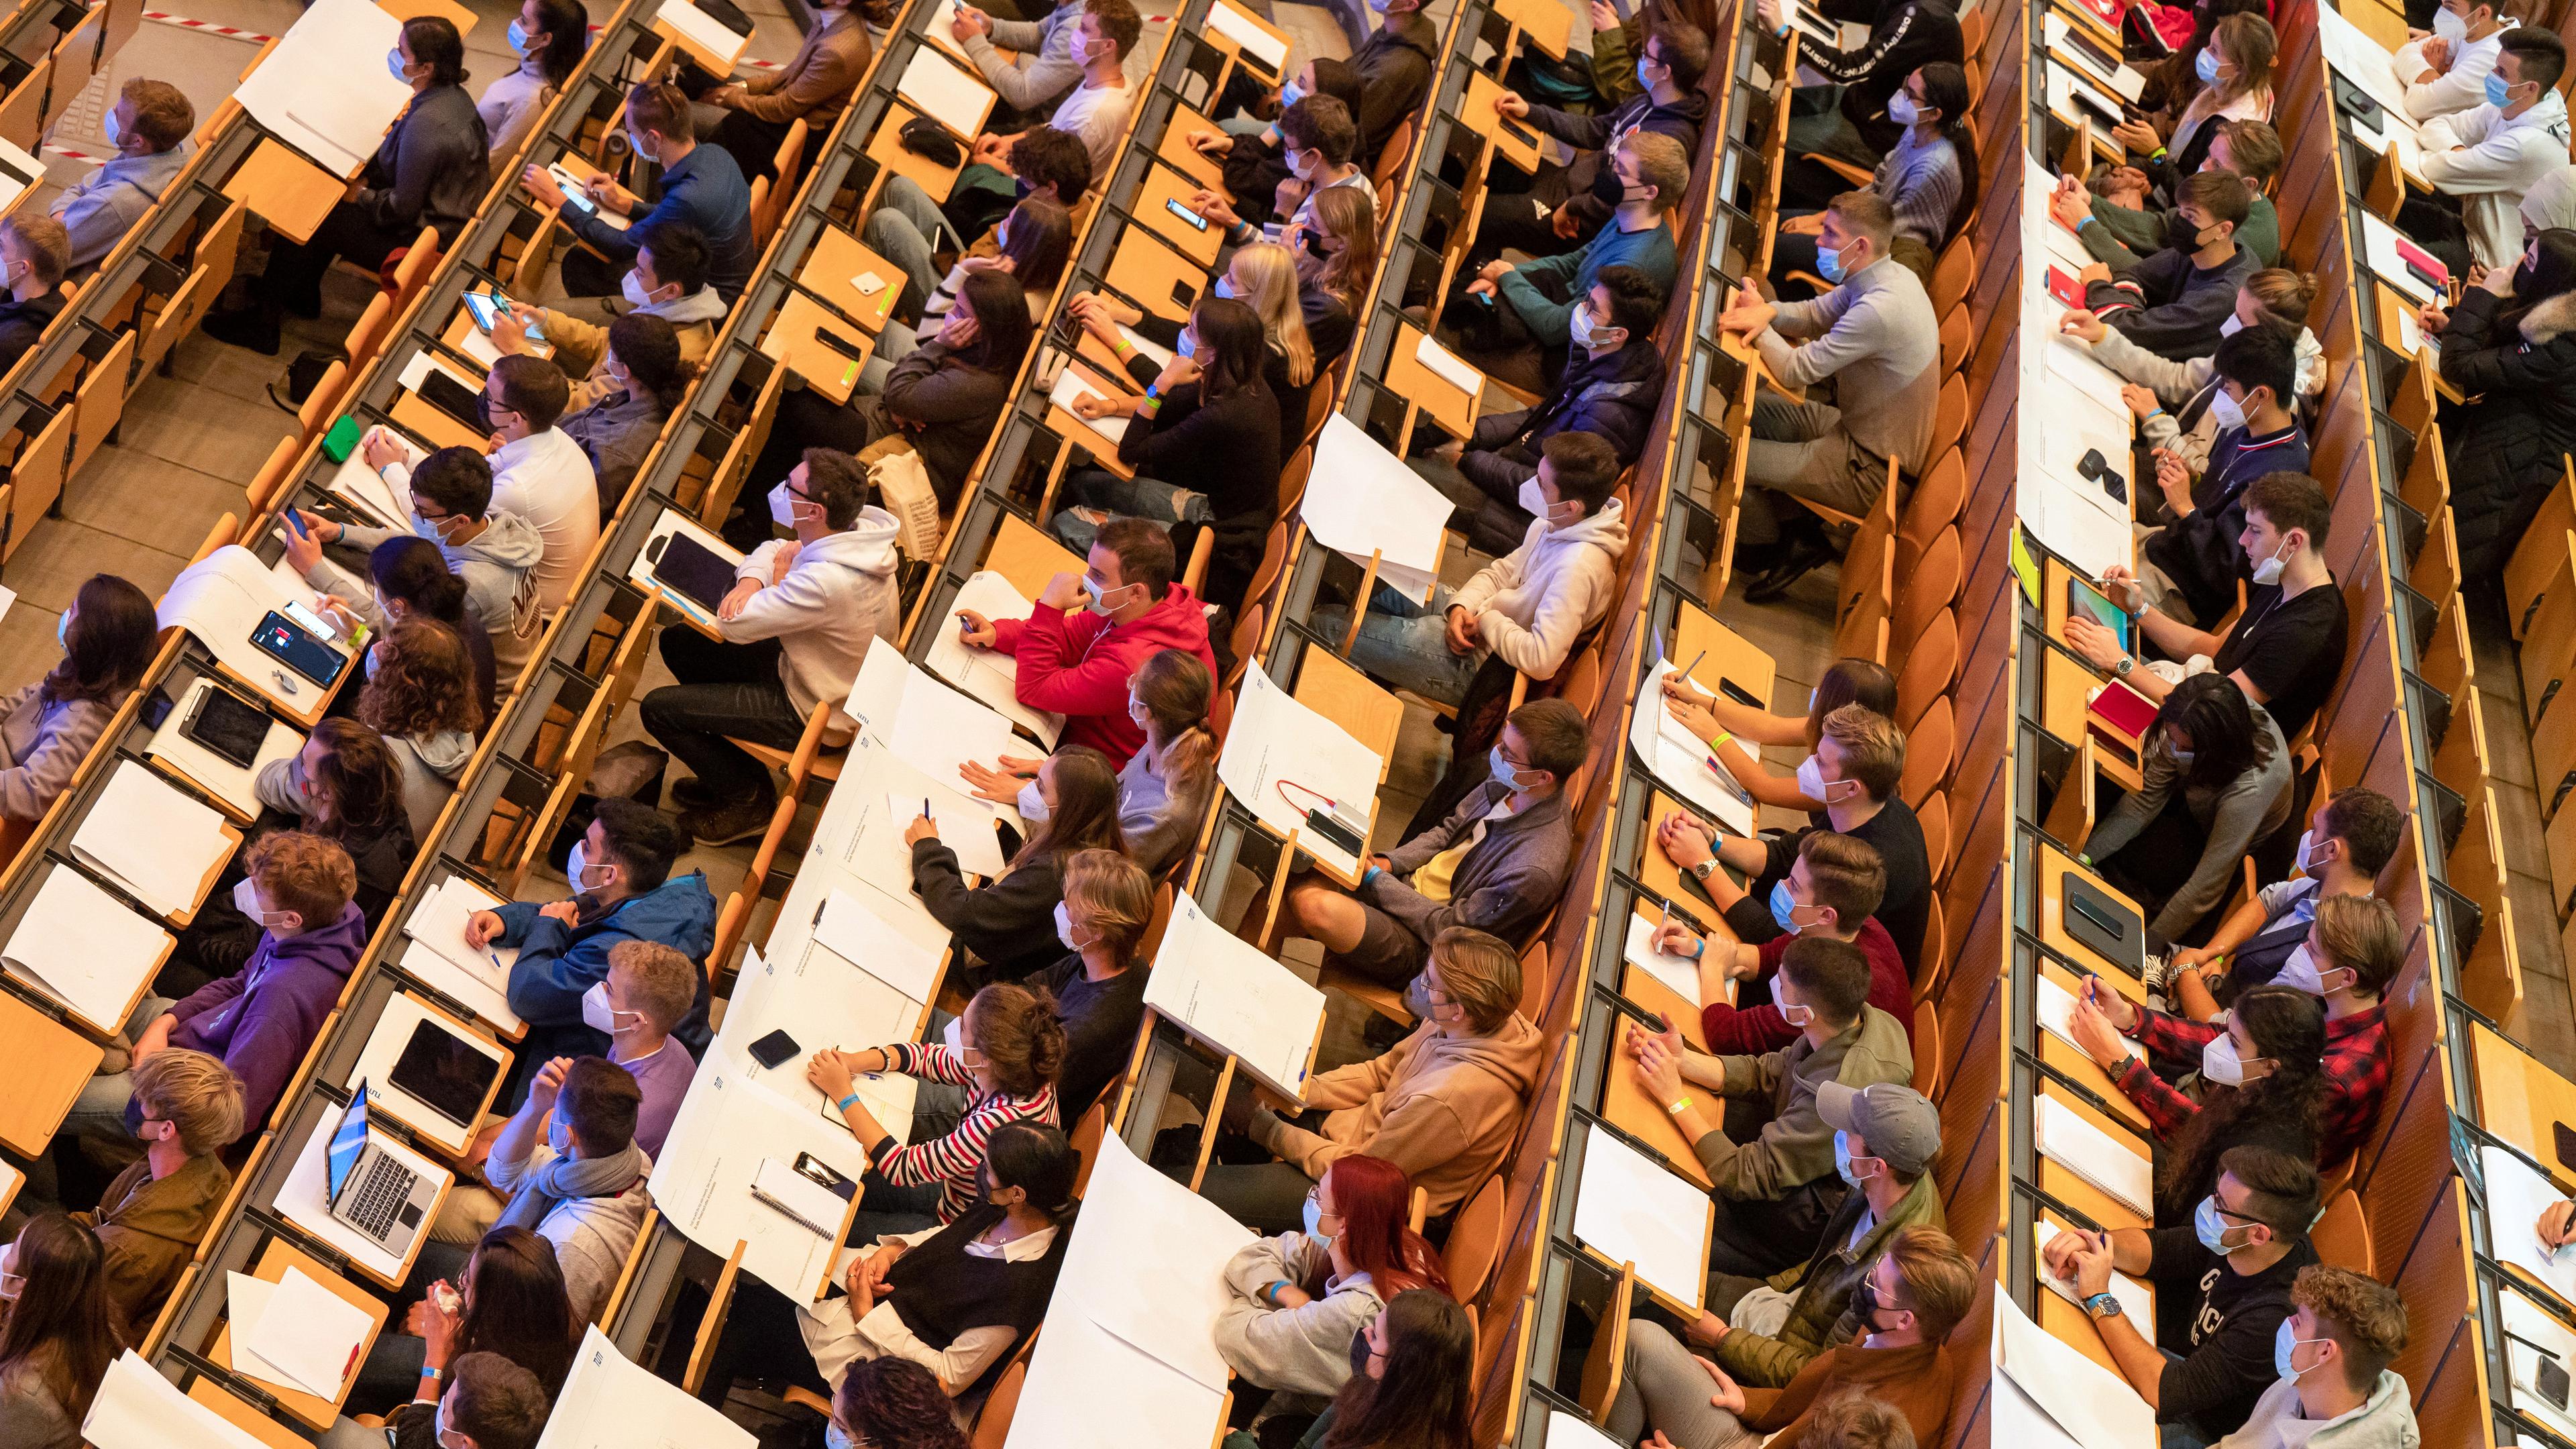 Archiv: Studenten nehmen an einer Präsenzveranstaltung im Audimax der Technischen Universität München (TUM) teil, aufgenommen am 18.10.2021